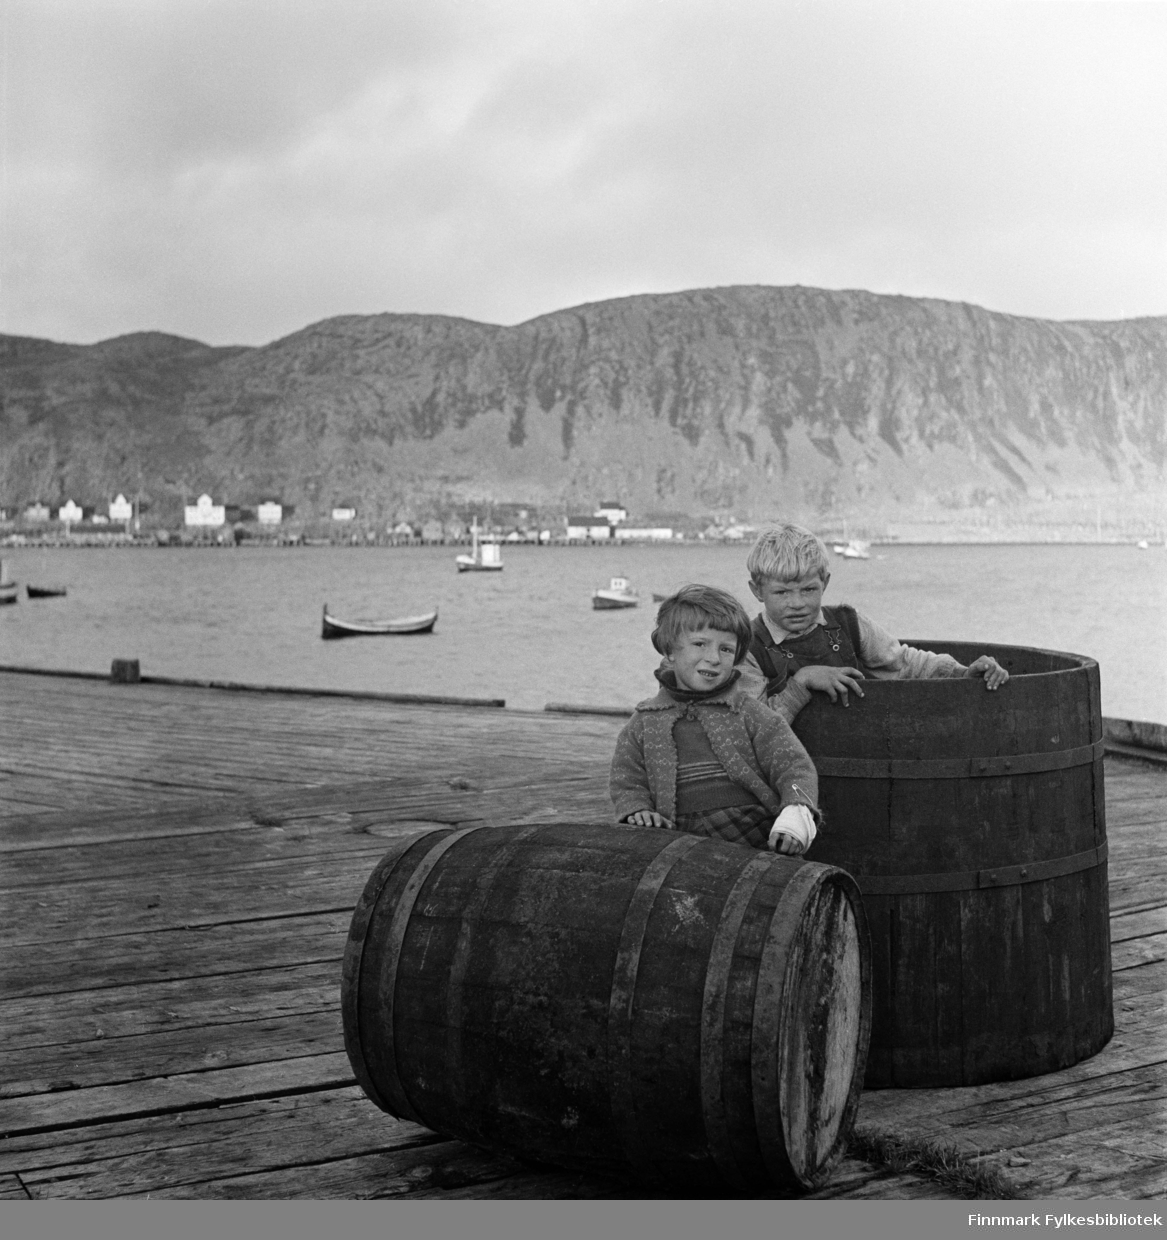 Åse Isaksen og Alf Nilsen (født 15.12.1933) på Nissen-kaia i Kjøllefjord, fotografert i 1940. Åse har bandasje på venstre arm med stor sikkerhetsnål. På andre siden av bukta sees flere fiskebruk og fiskemottak, hotell og boliger i Kjøllefjord. På fjorden ligger fiskebåter oppankret. En nordlandsbåt nærmest kamera. Åse har en strikket jakke og genser på seg og rutete skjørt eller bukser. Alf ser ut til å ha på seg snekkerbukser og skjorte. Sannsynligvis er dette på Nissenkaia.